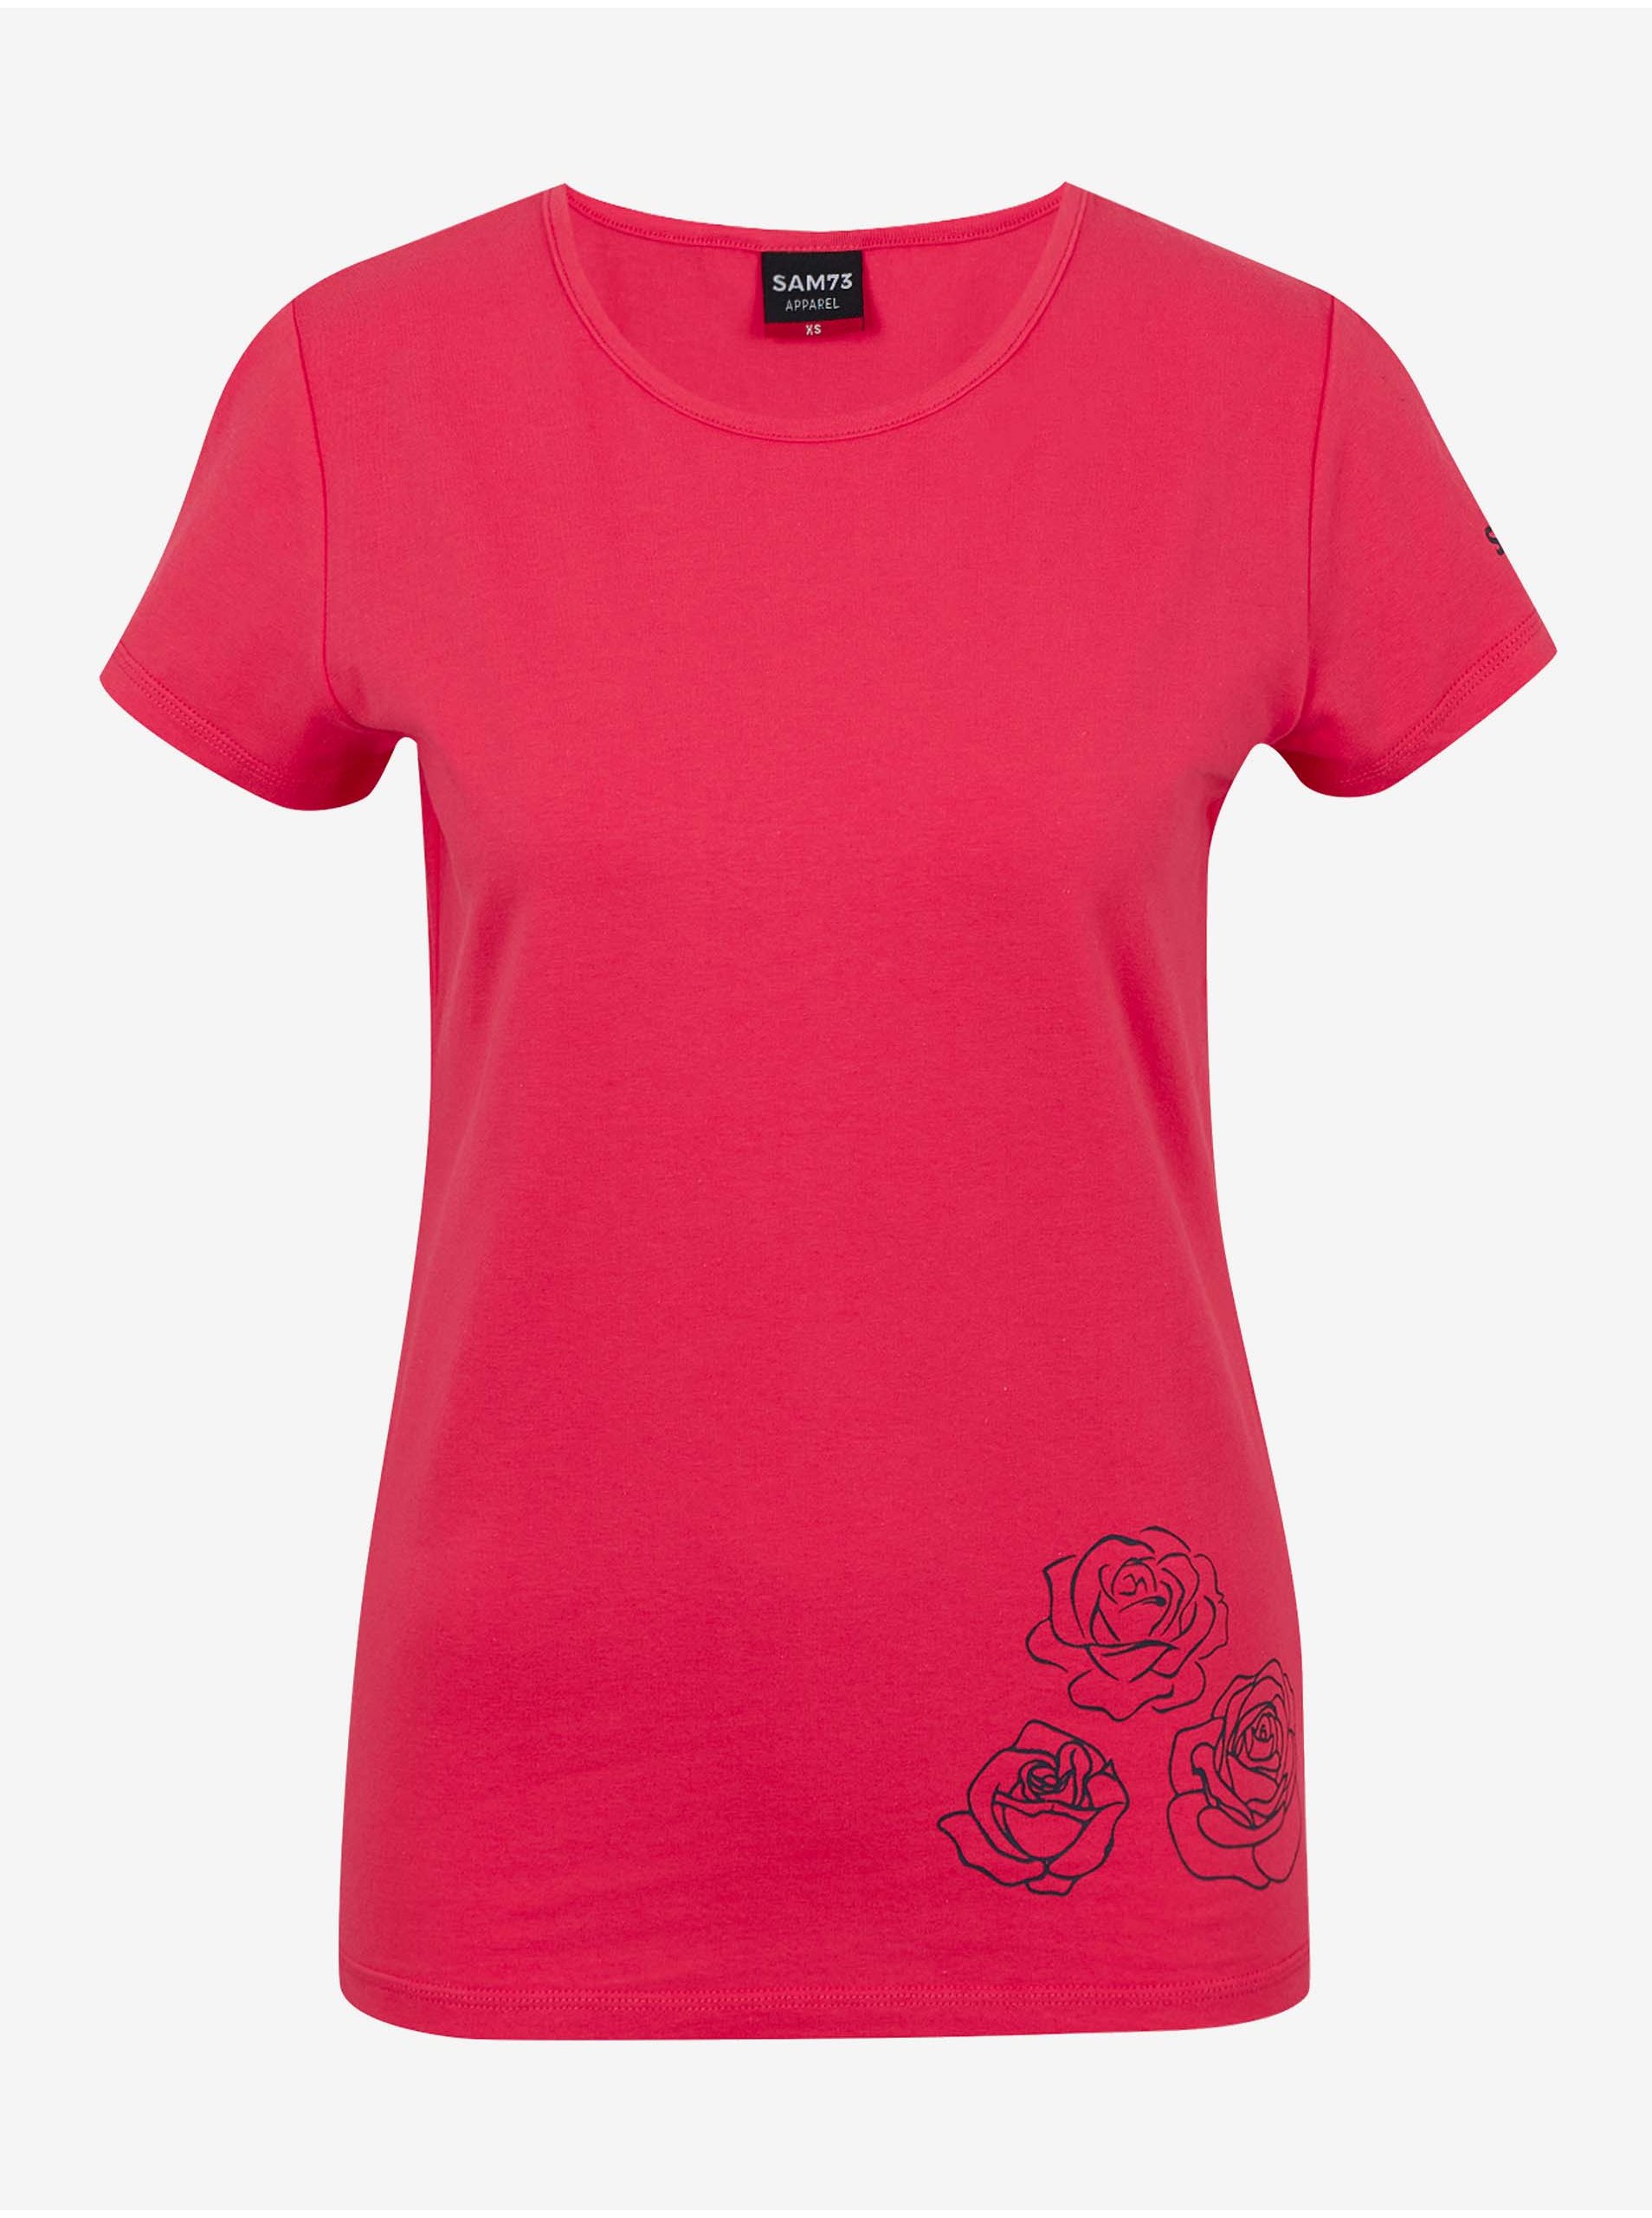 E-shop Tmavě růžové dámské tričko SAM 73 Bethany